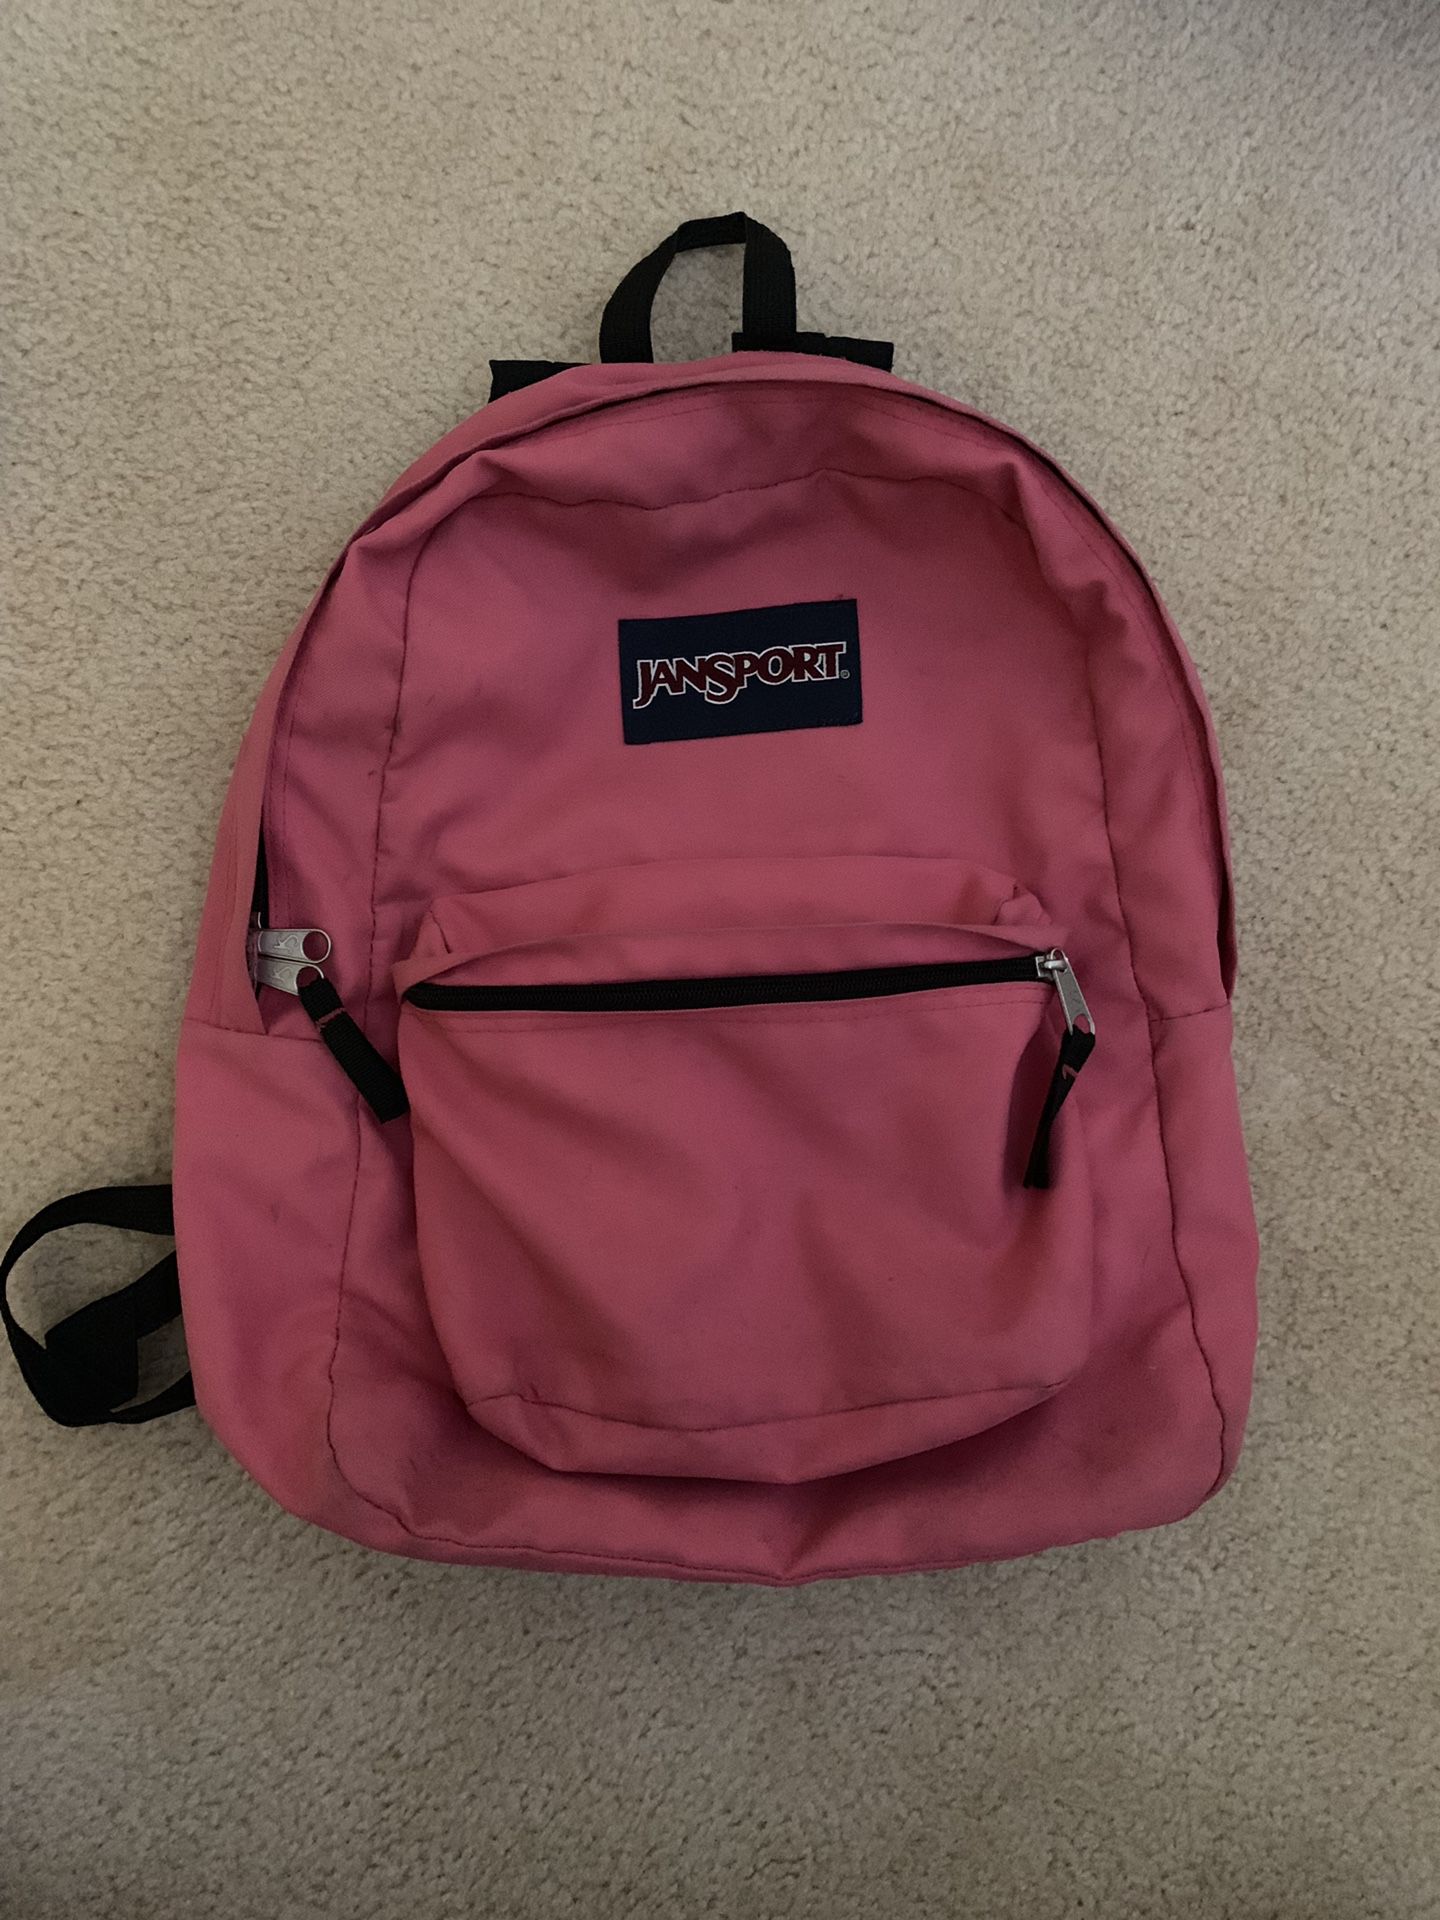 Backpack Jansport Pink